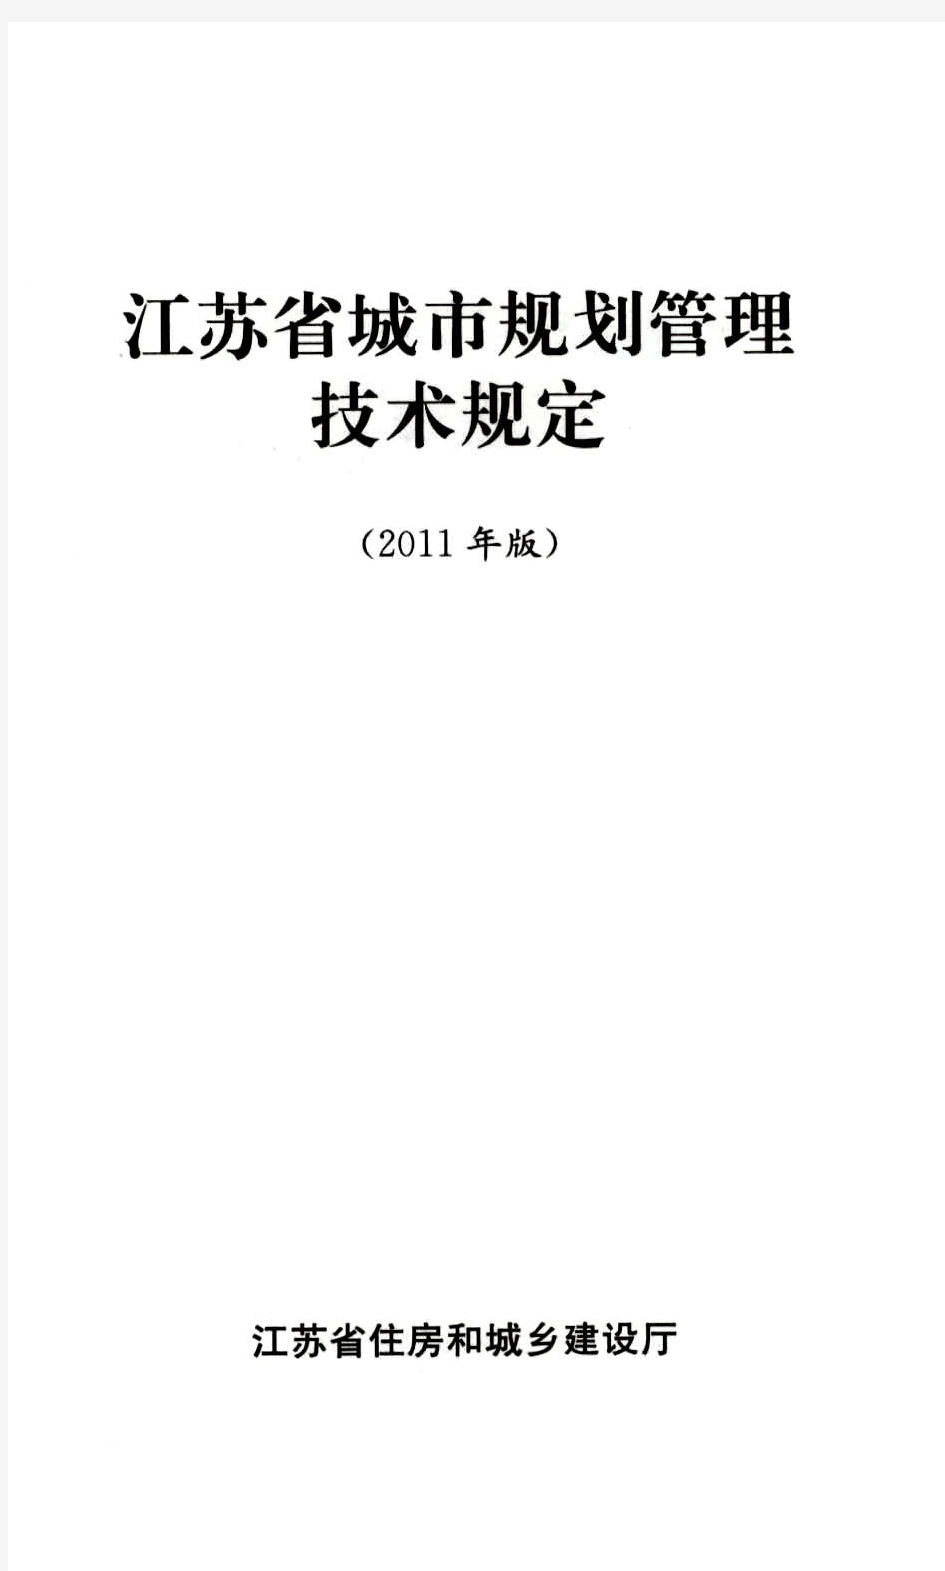 江苏省城市规划管理技术规定(2011年版)